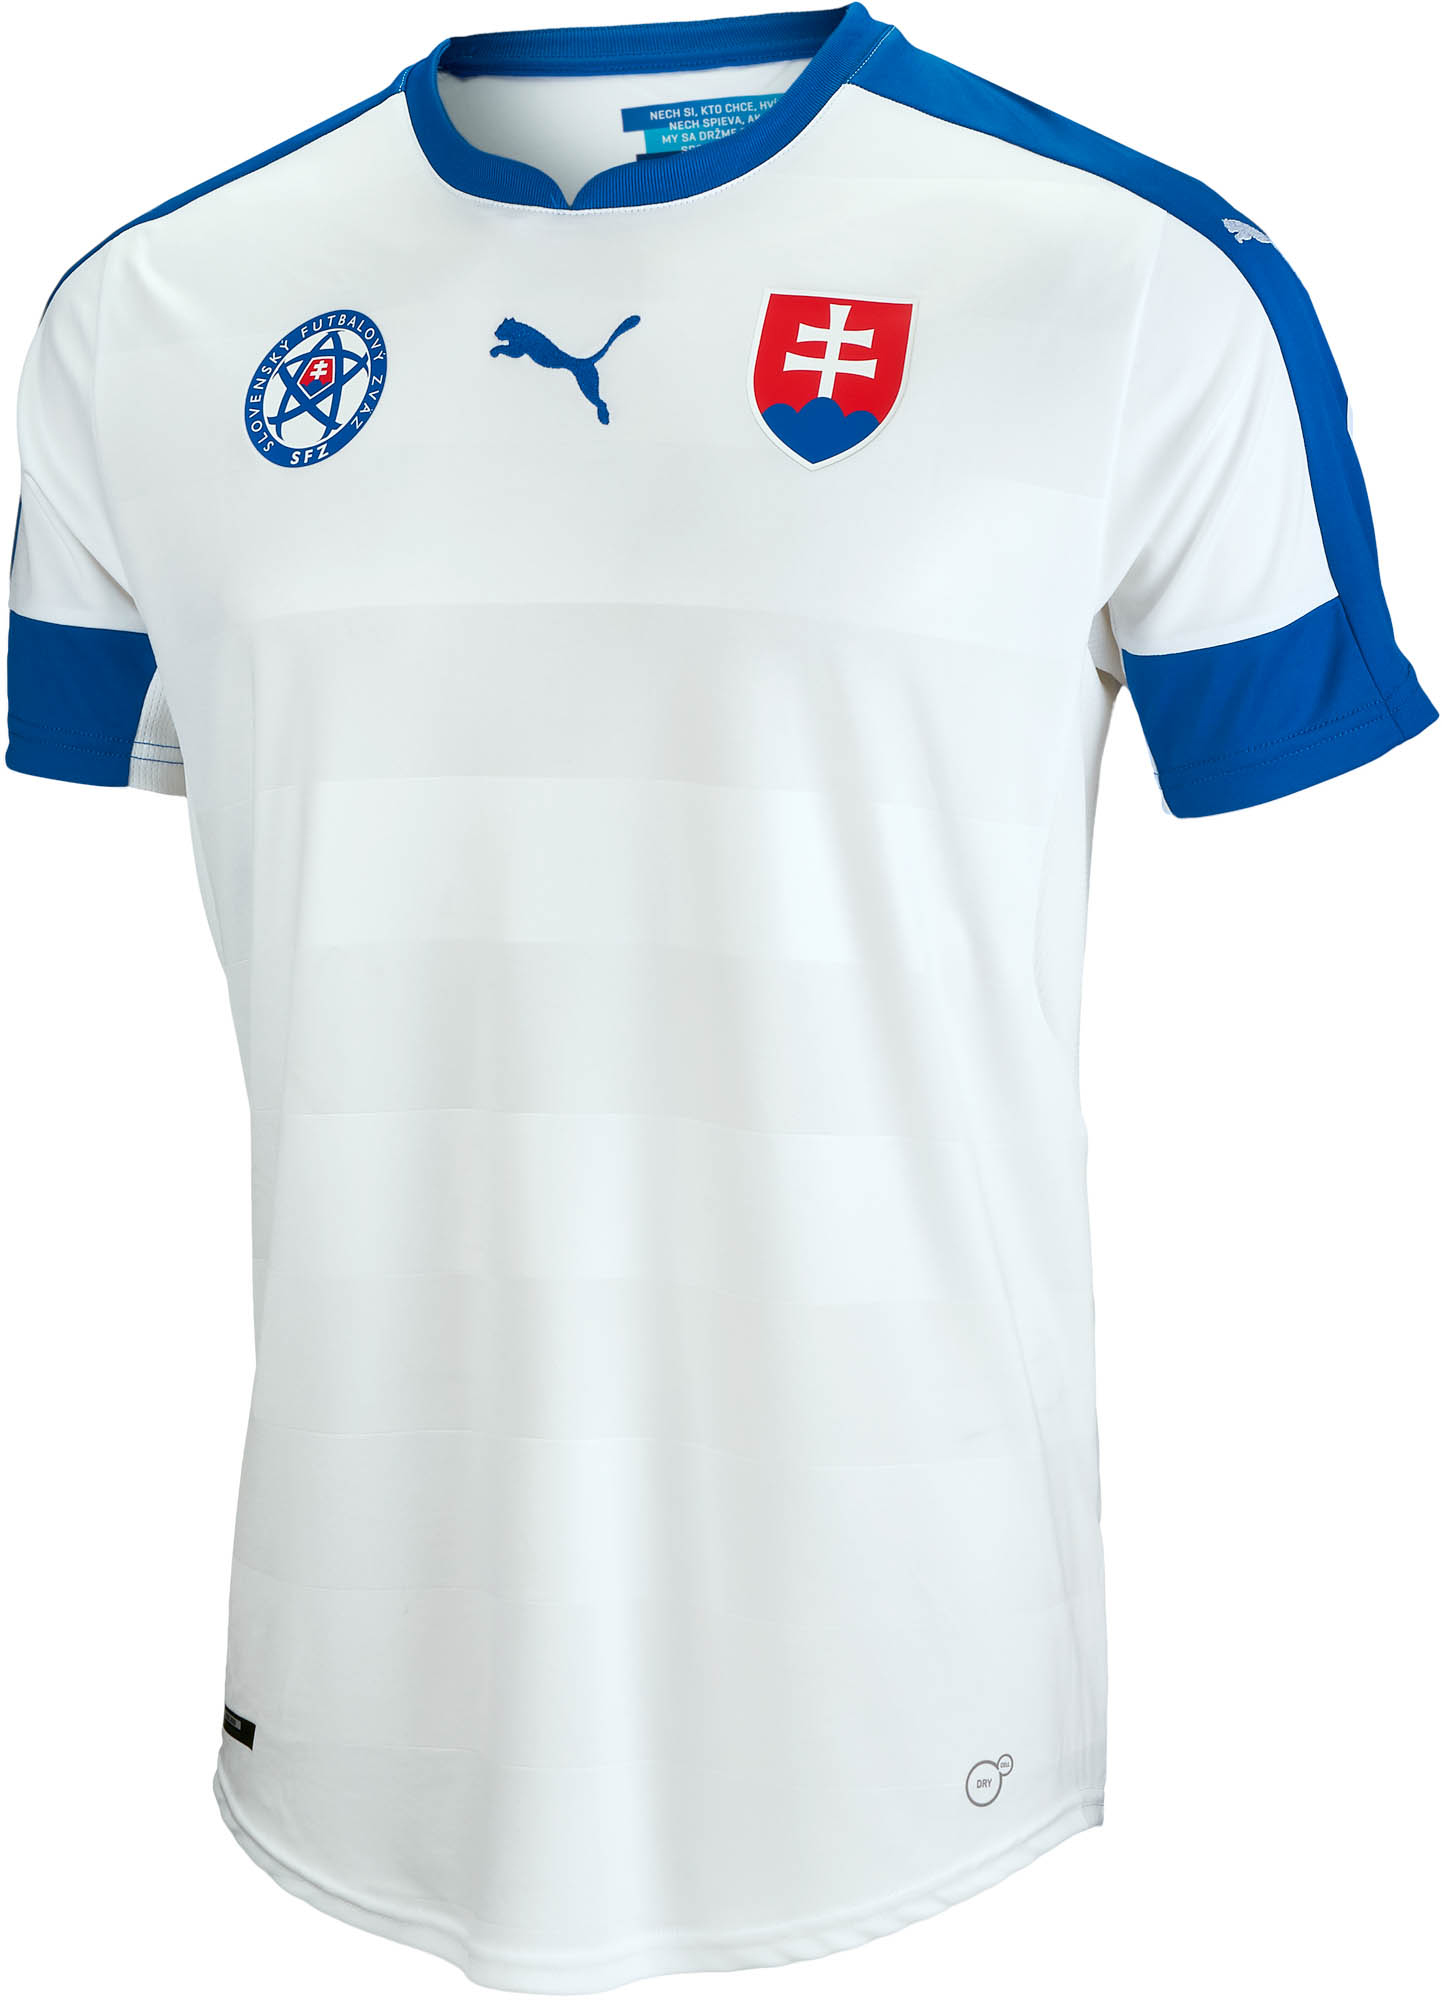 Slovakia Soccer Jerseys